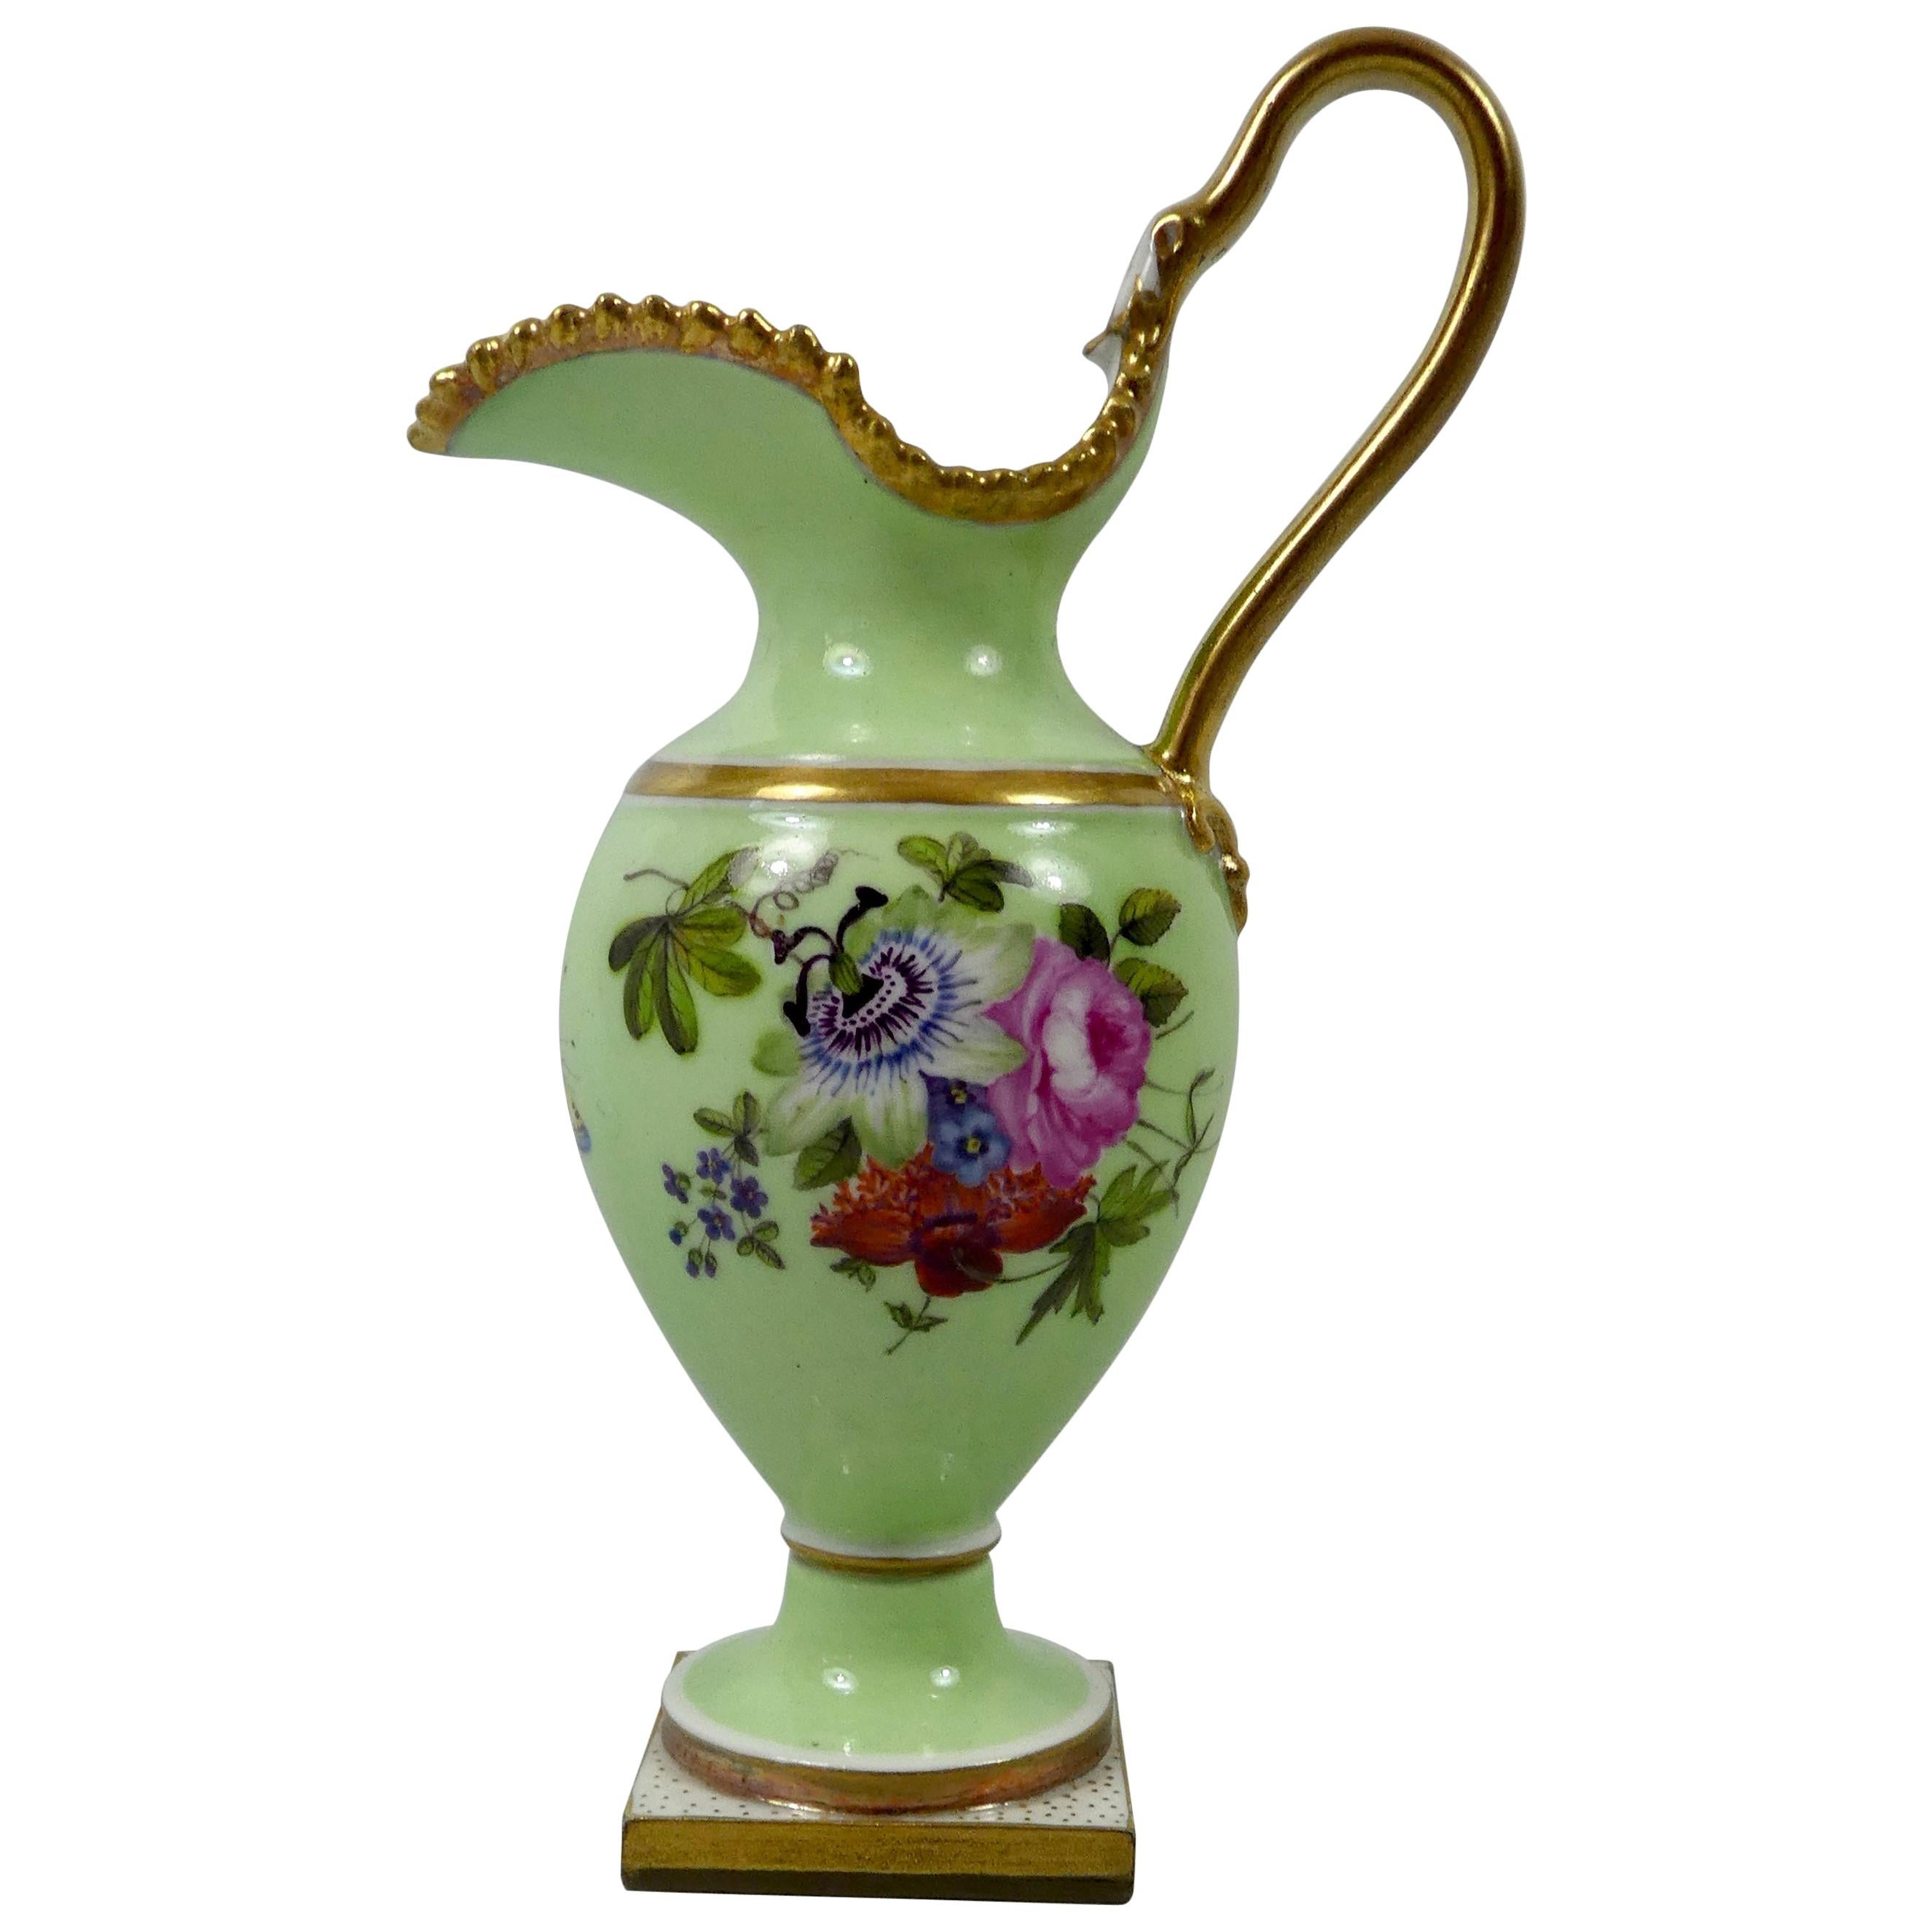 FBB Worcester Porcelain Miniature Ewer, circa 1810